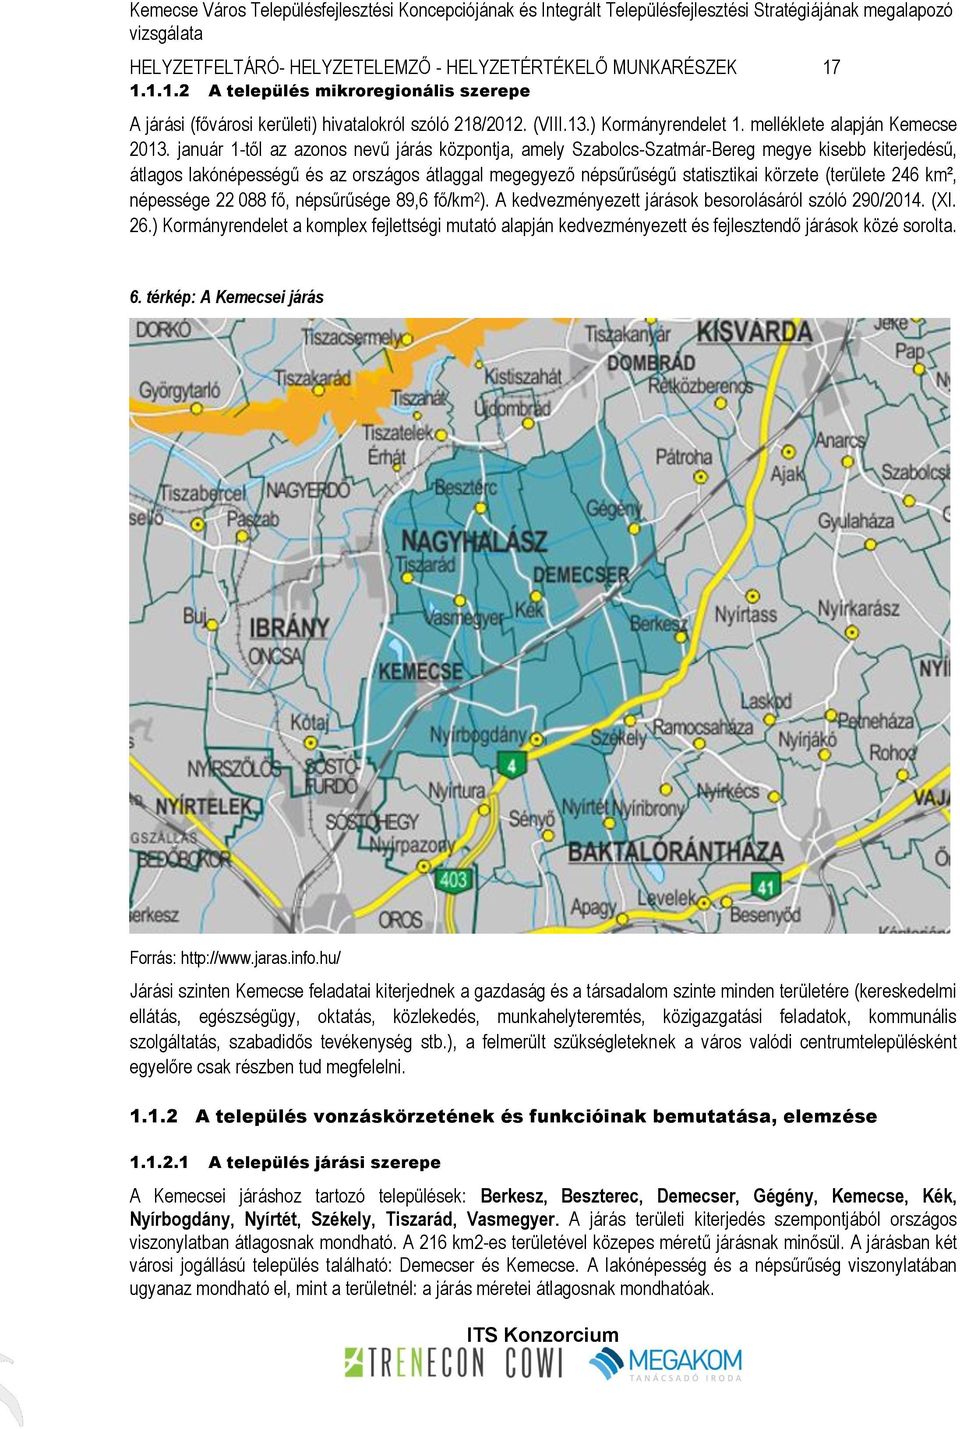 január 1-től az azonos nevű járás központja, amely Szabolcs-Szatmár-Bereg megye kisebb kiterjedésű, átlagos lakónépességű és az országos átlaggal megegyező népsűrűségű statisztikai körzete (területe